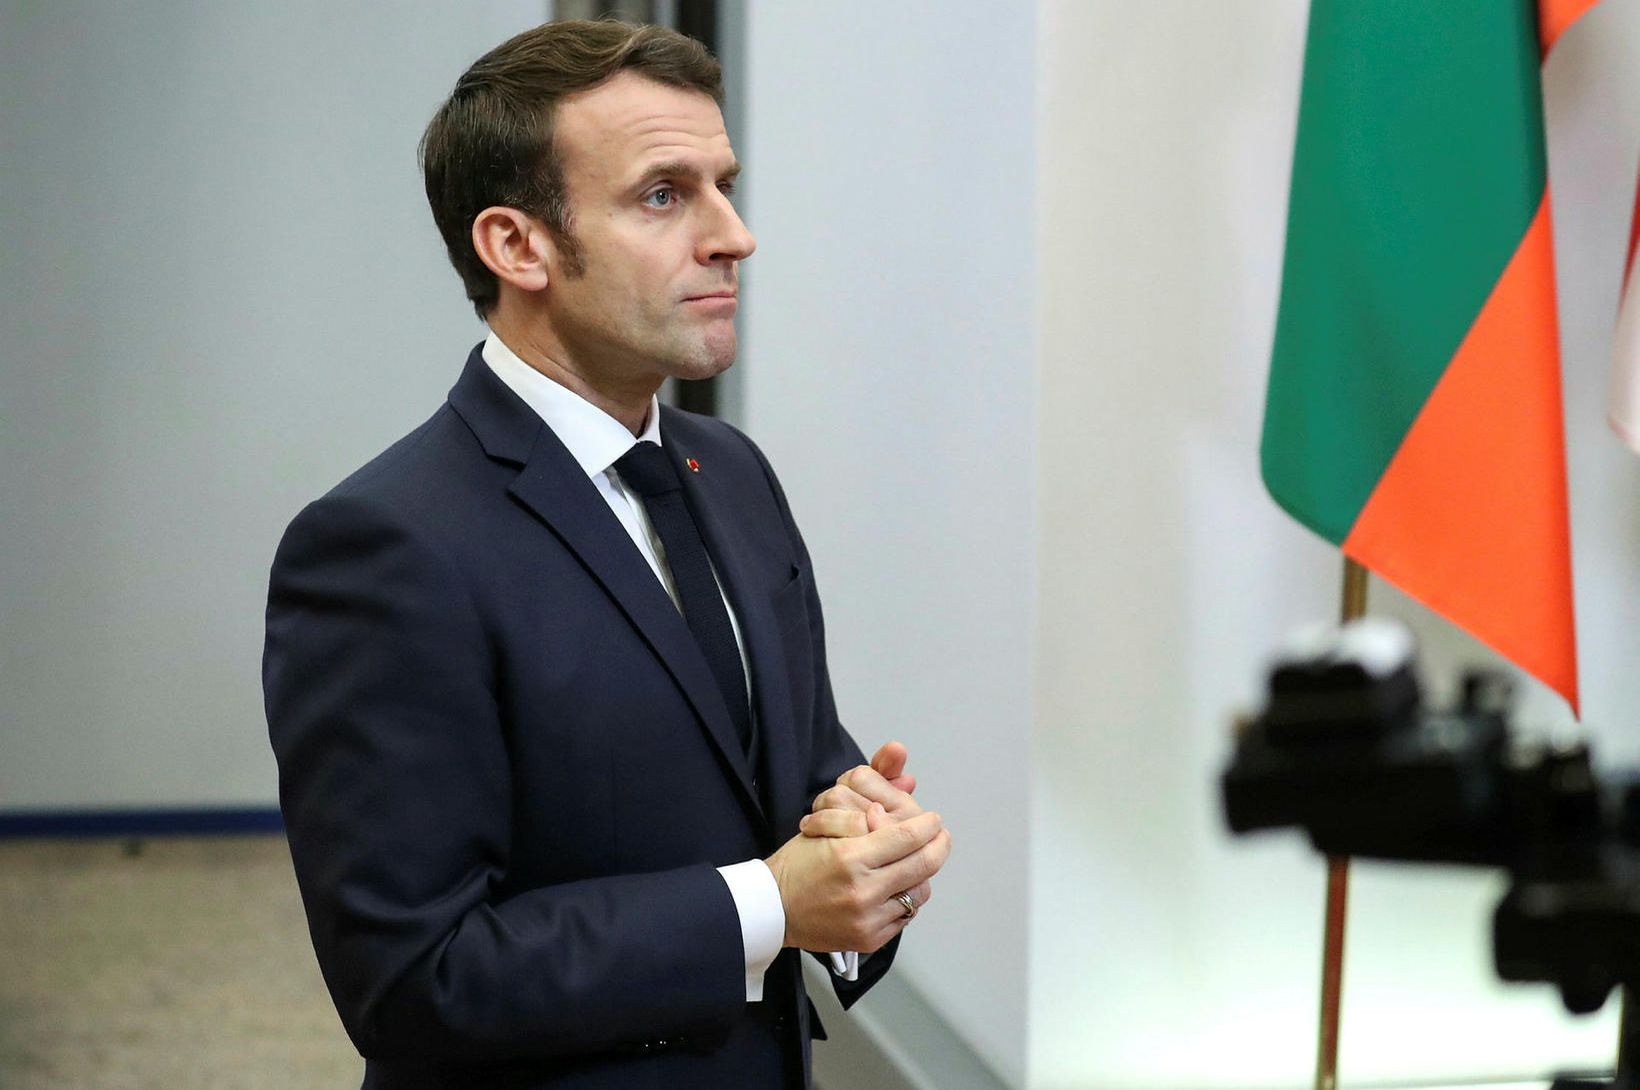 Kvenréttindasinnar argir út í Macron: „Láttu legin okkar vera“ 